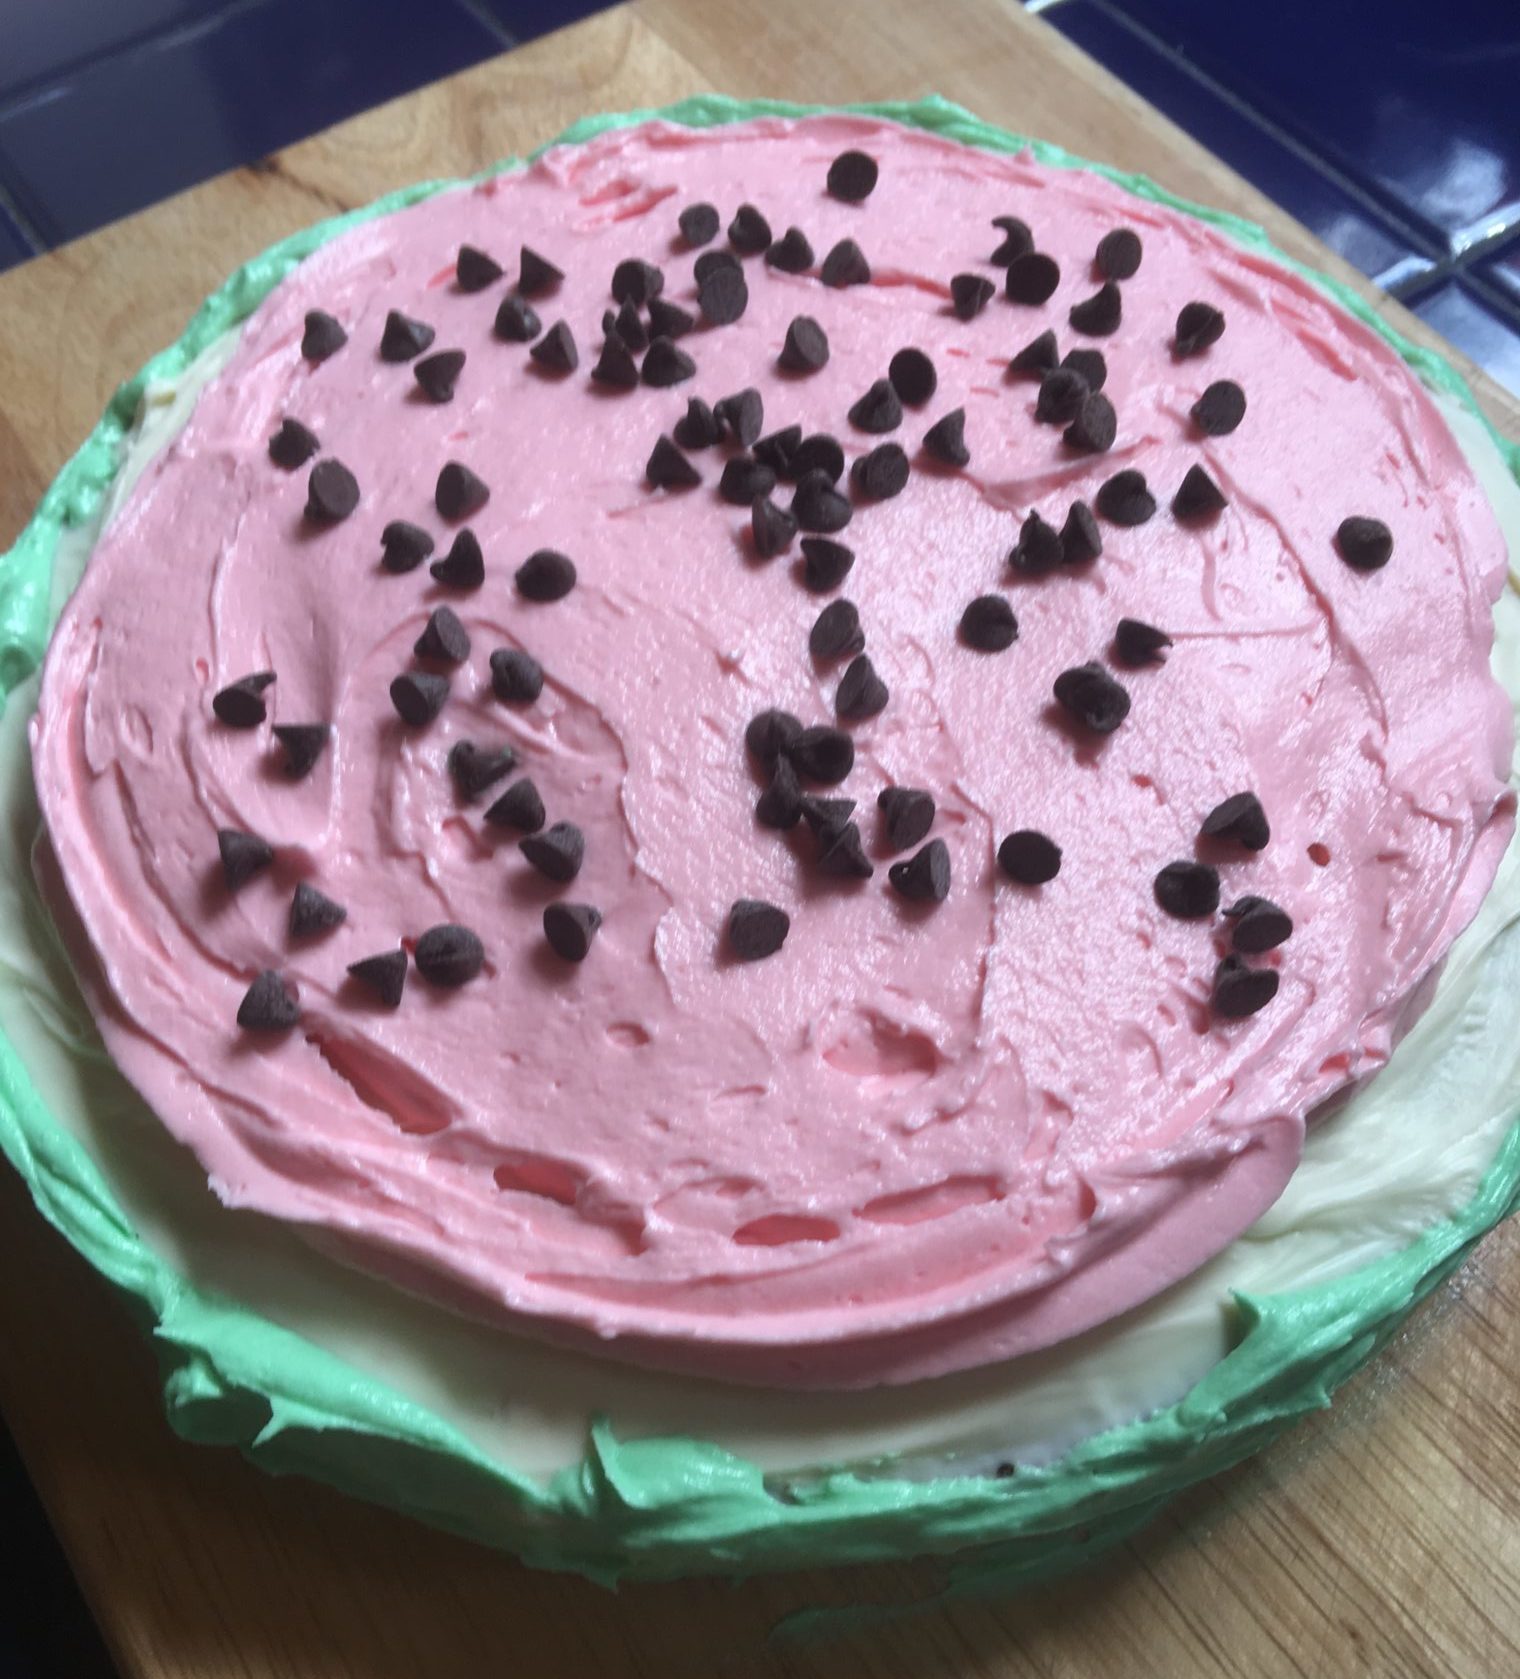 Single layer cake shaped like a watermelon slice